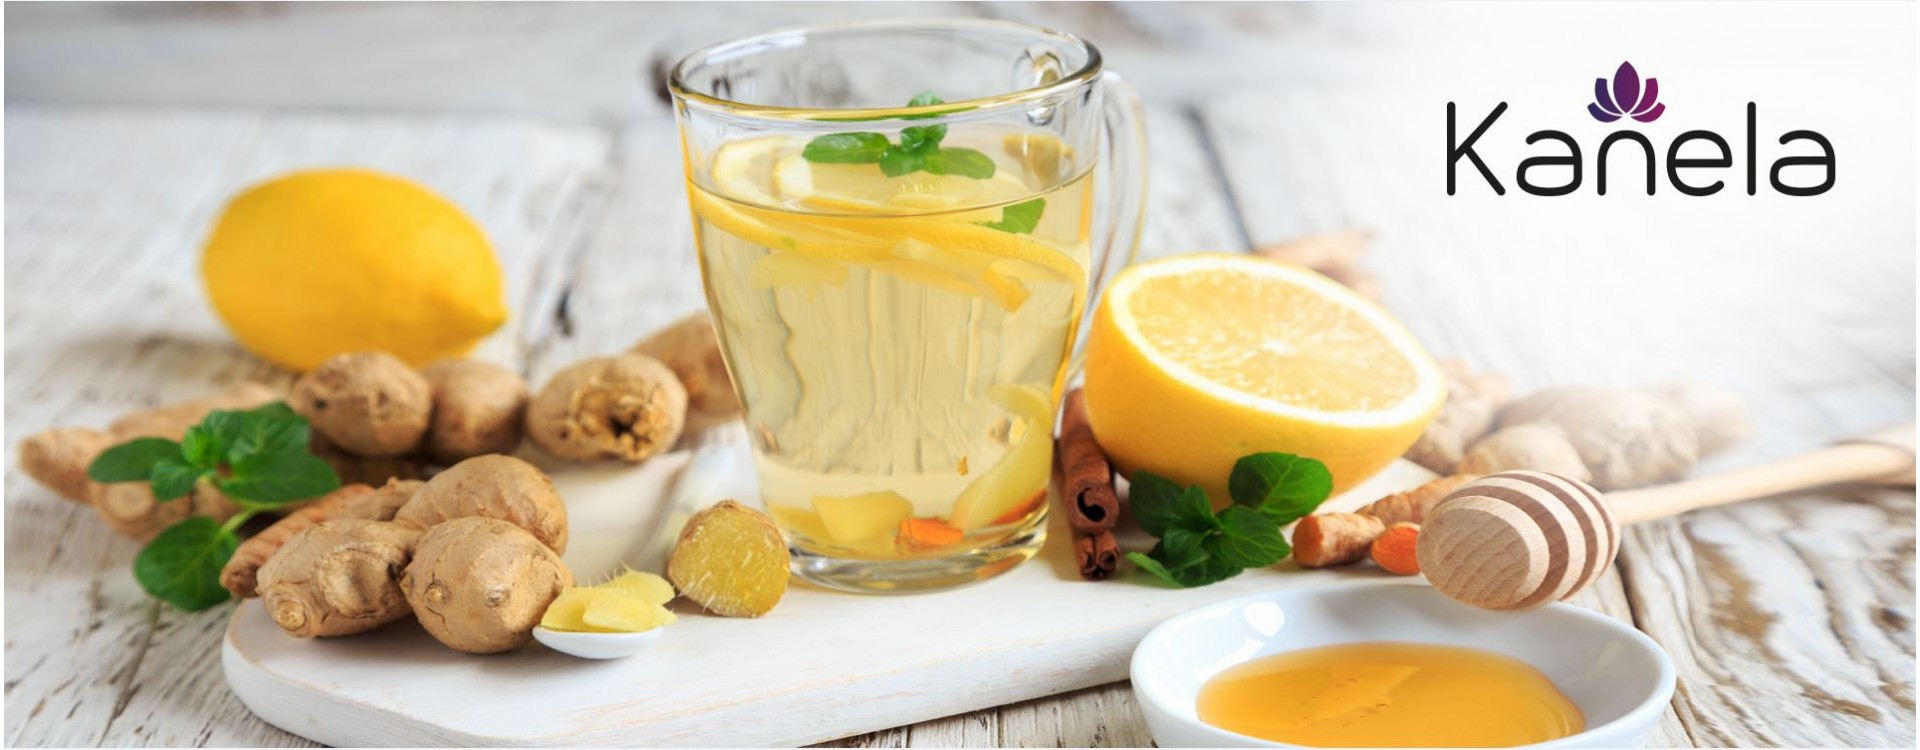 Quel thé aide avec les problèmes digestifs?